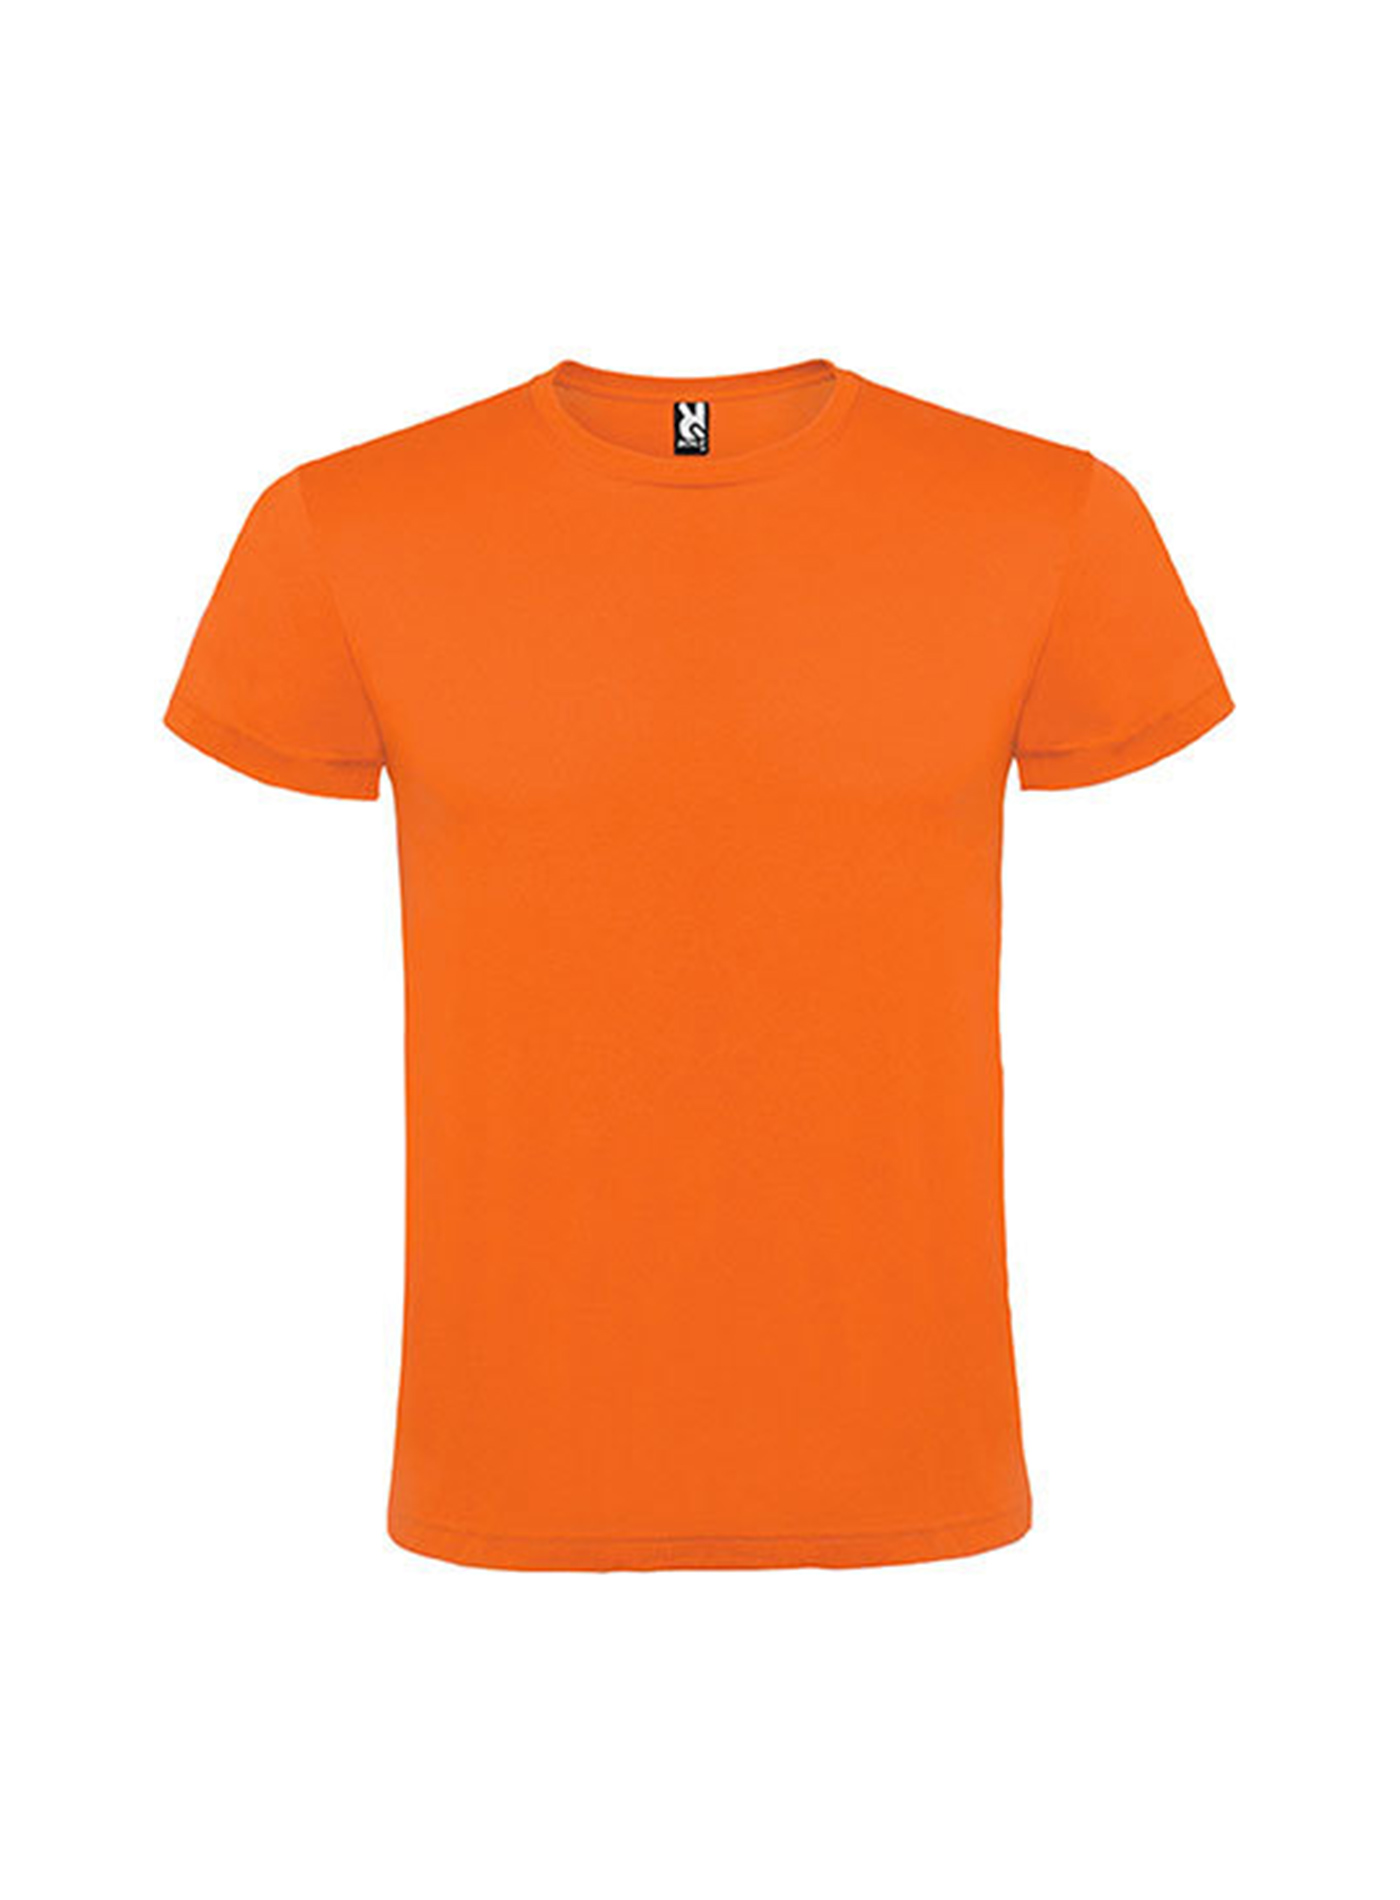 Pánské tričko Roly Atomic - Oranžová XXL